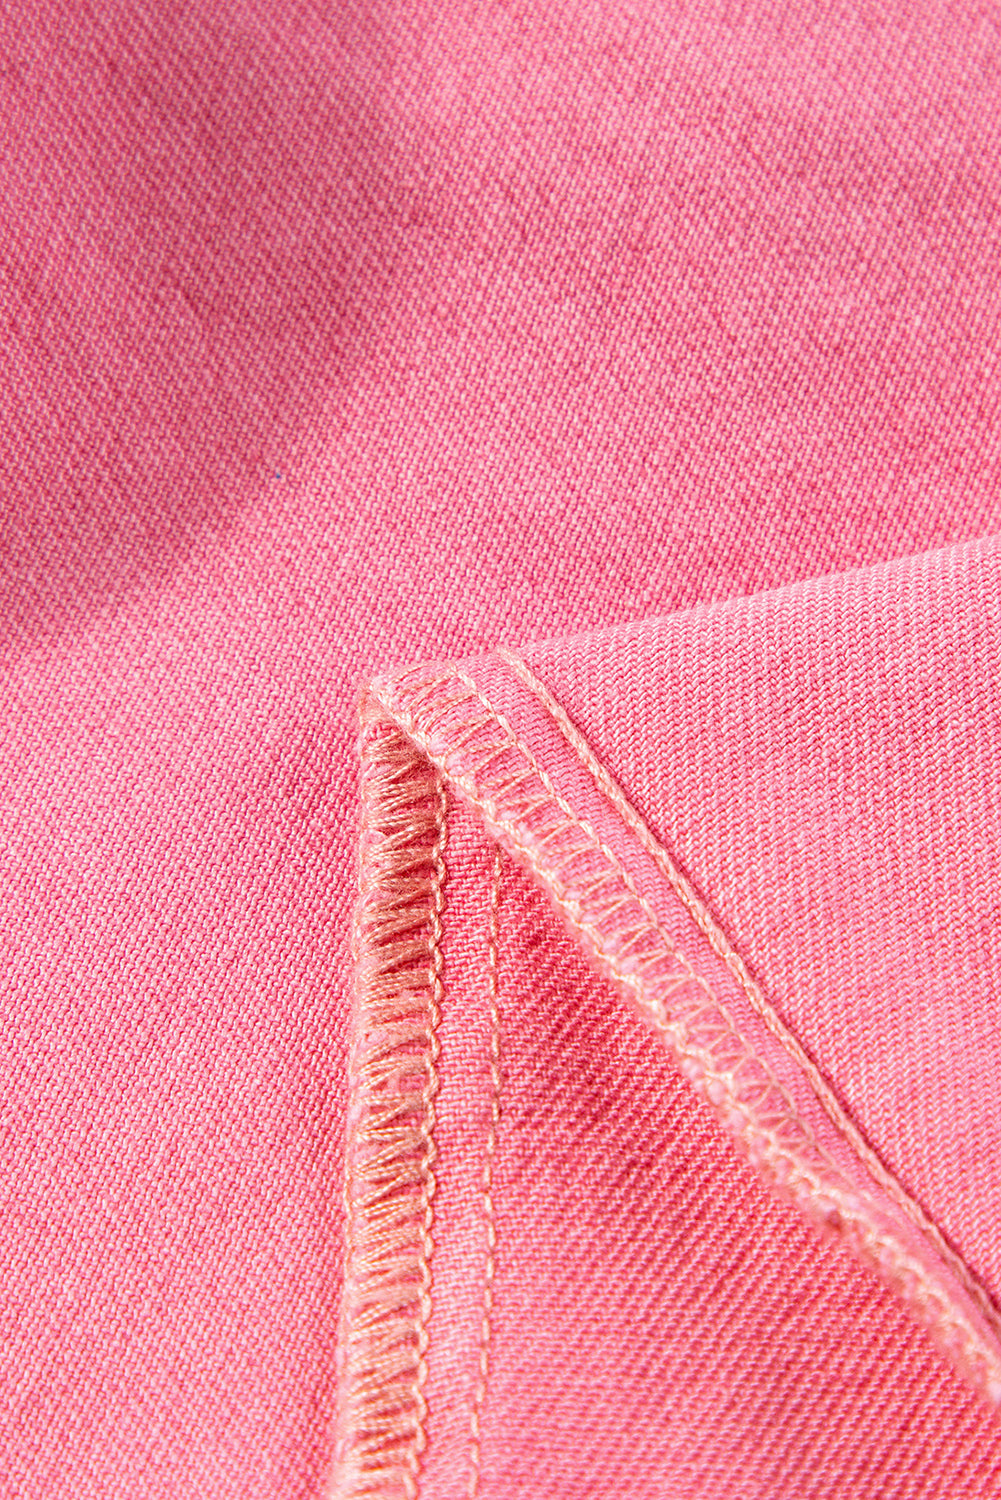 Rosafarbene Denim-Hose mit verstreuten Strasssteinen und Farbverlauf